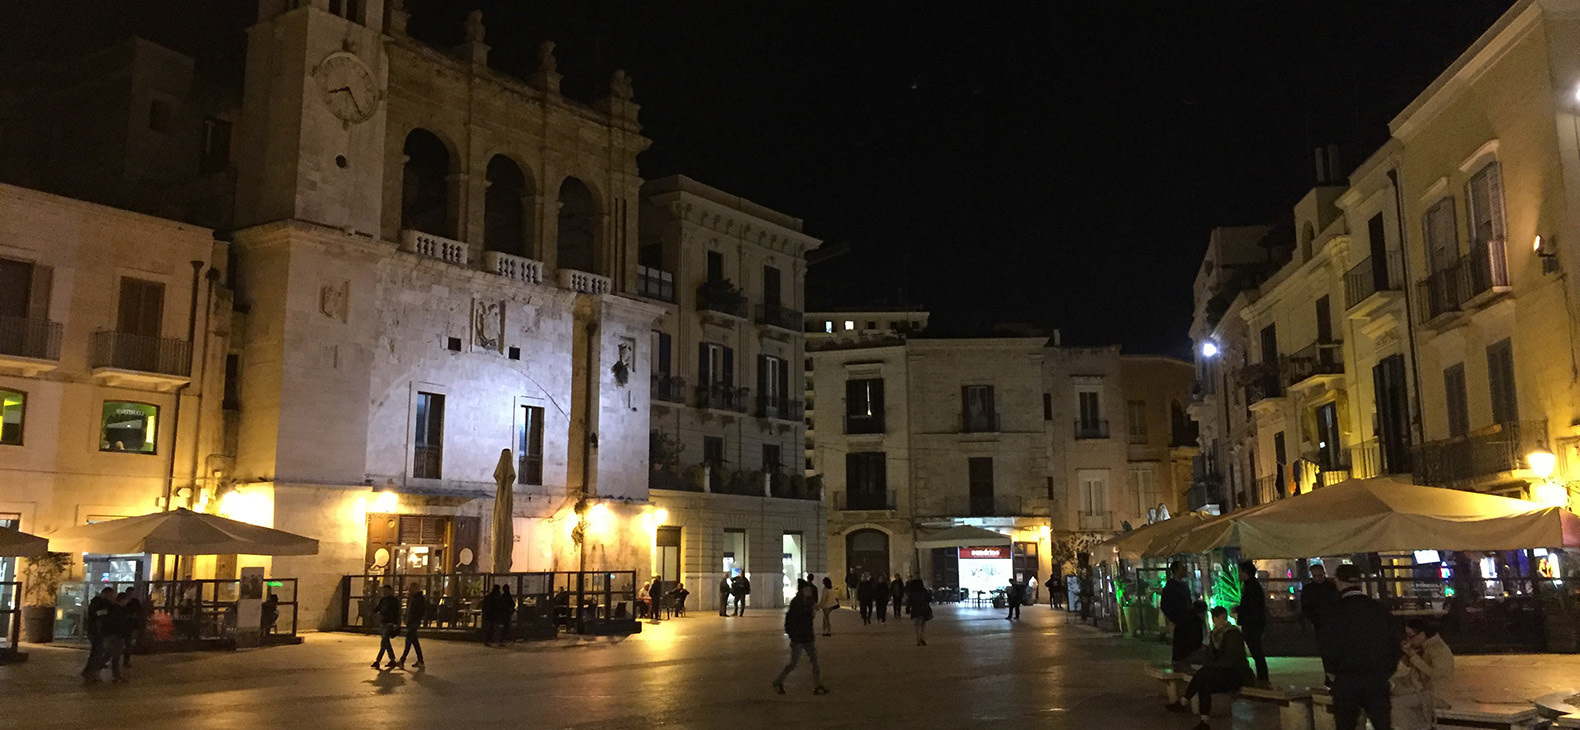 Aufnahme bei Nacht von einer Innenstadt. Auf der Straße laufen Menschen